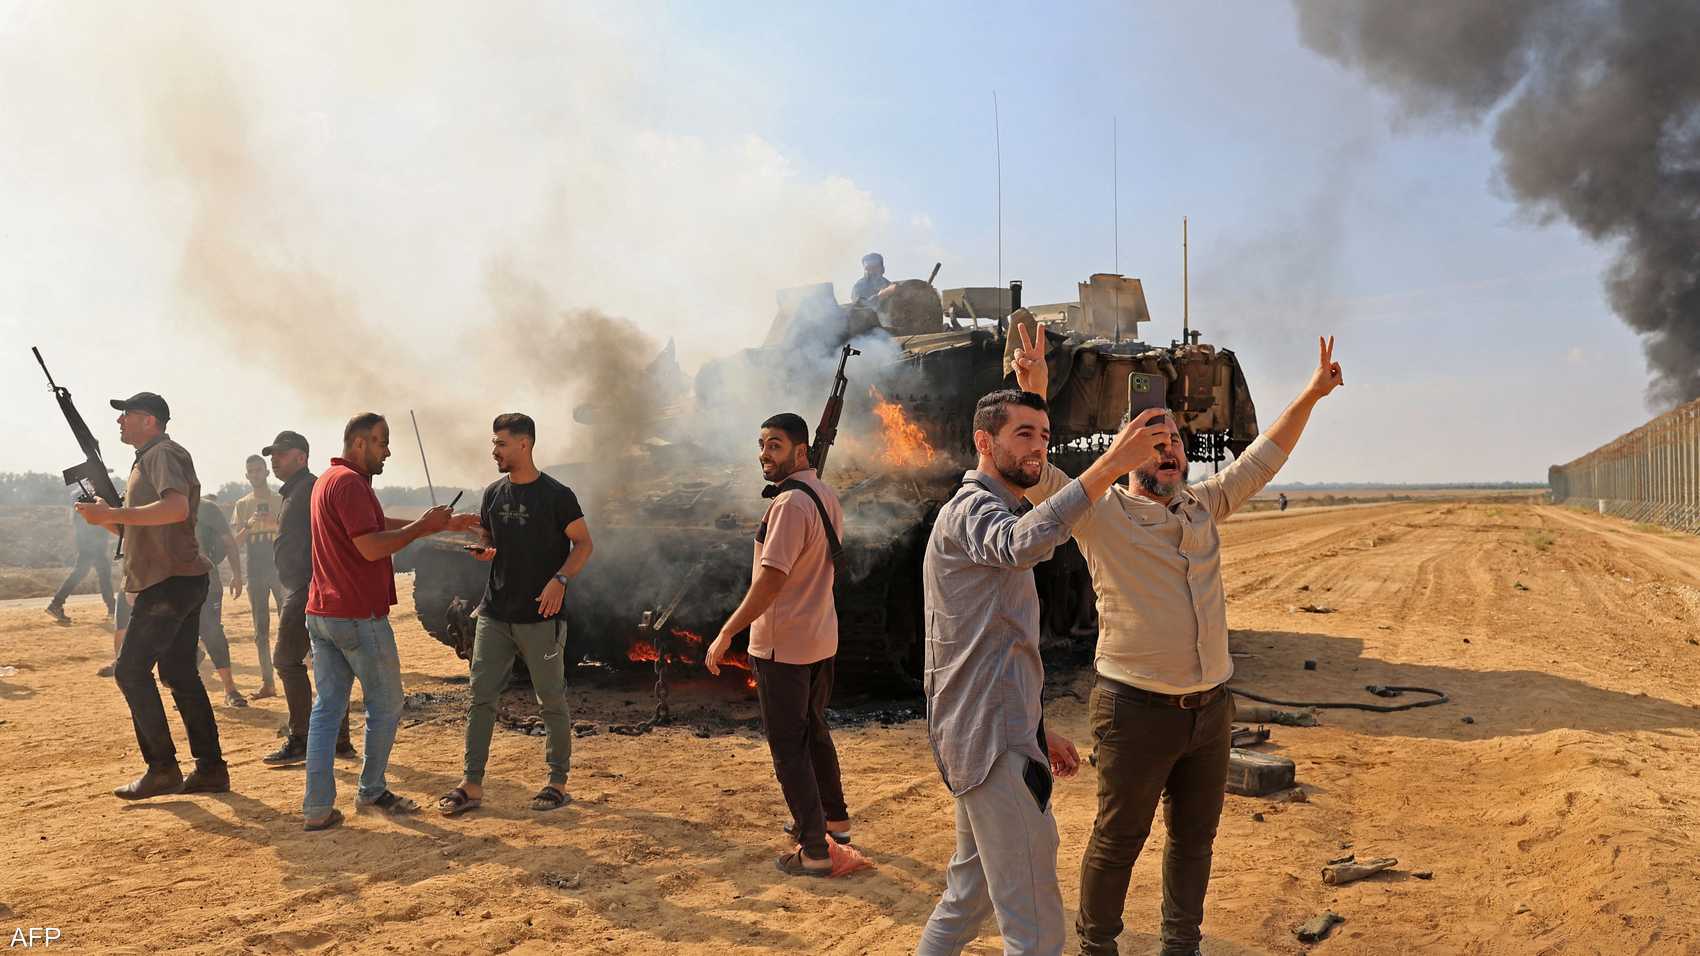 يقول خبراء إن تصريحات الإسرائيليين نتيجة الغضب من هجوم حماس